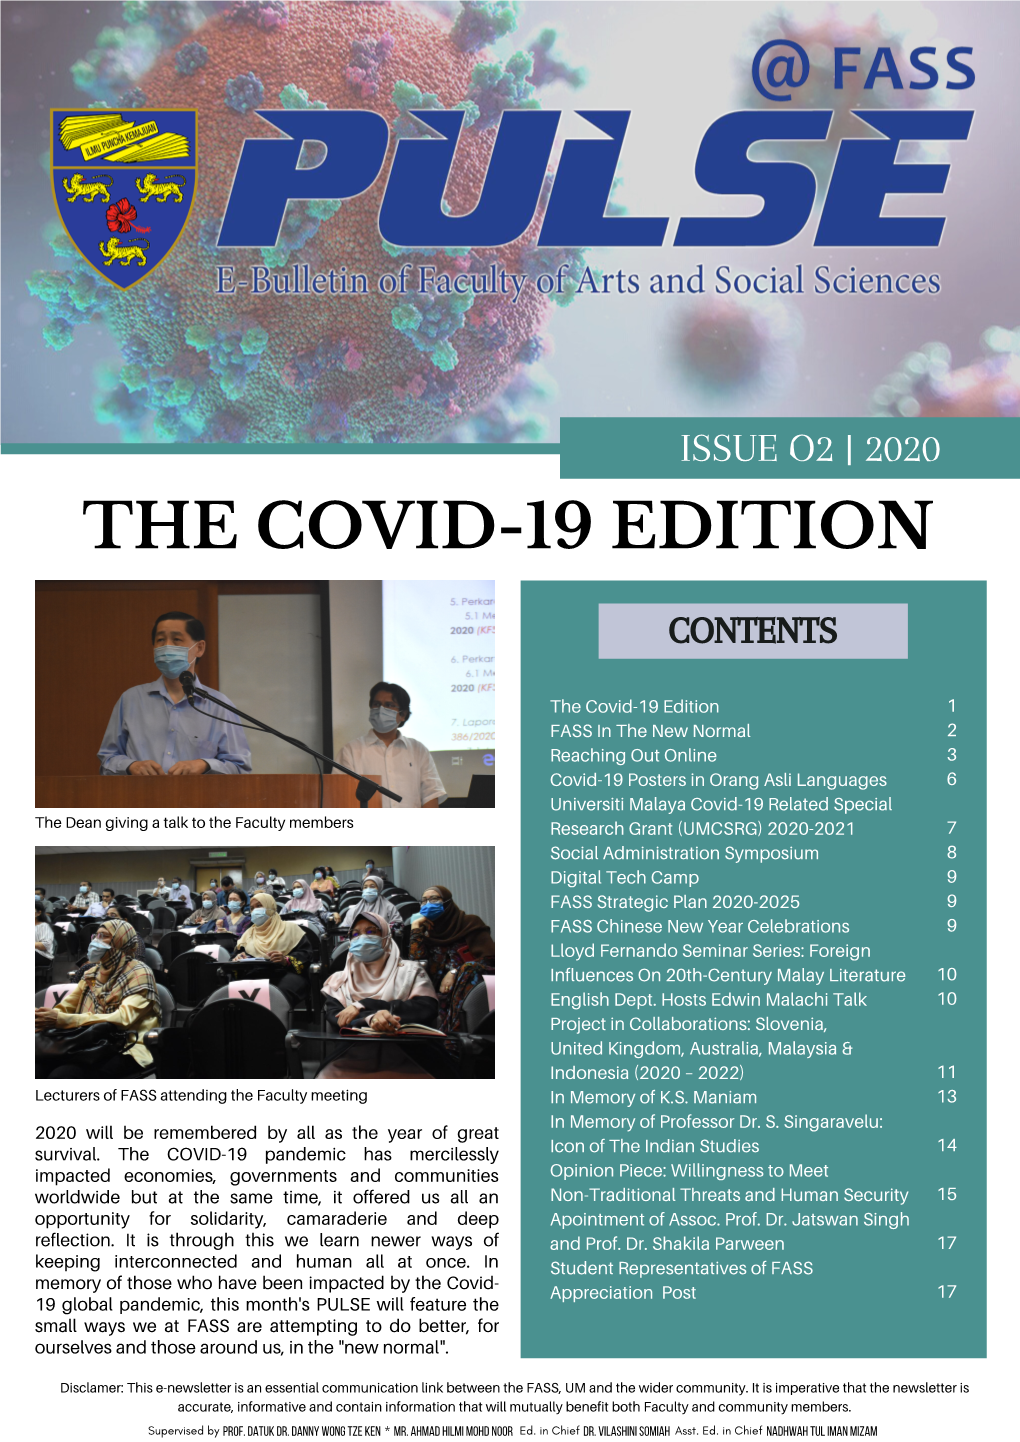 The Covid-19 Edition